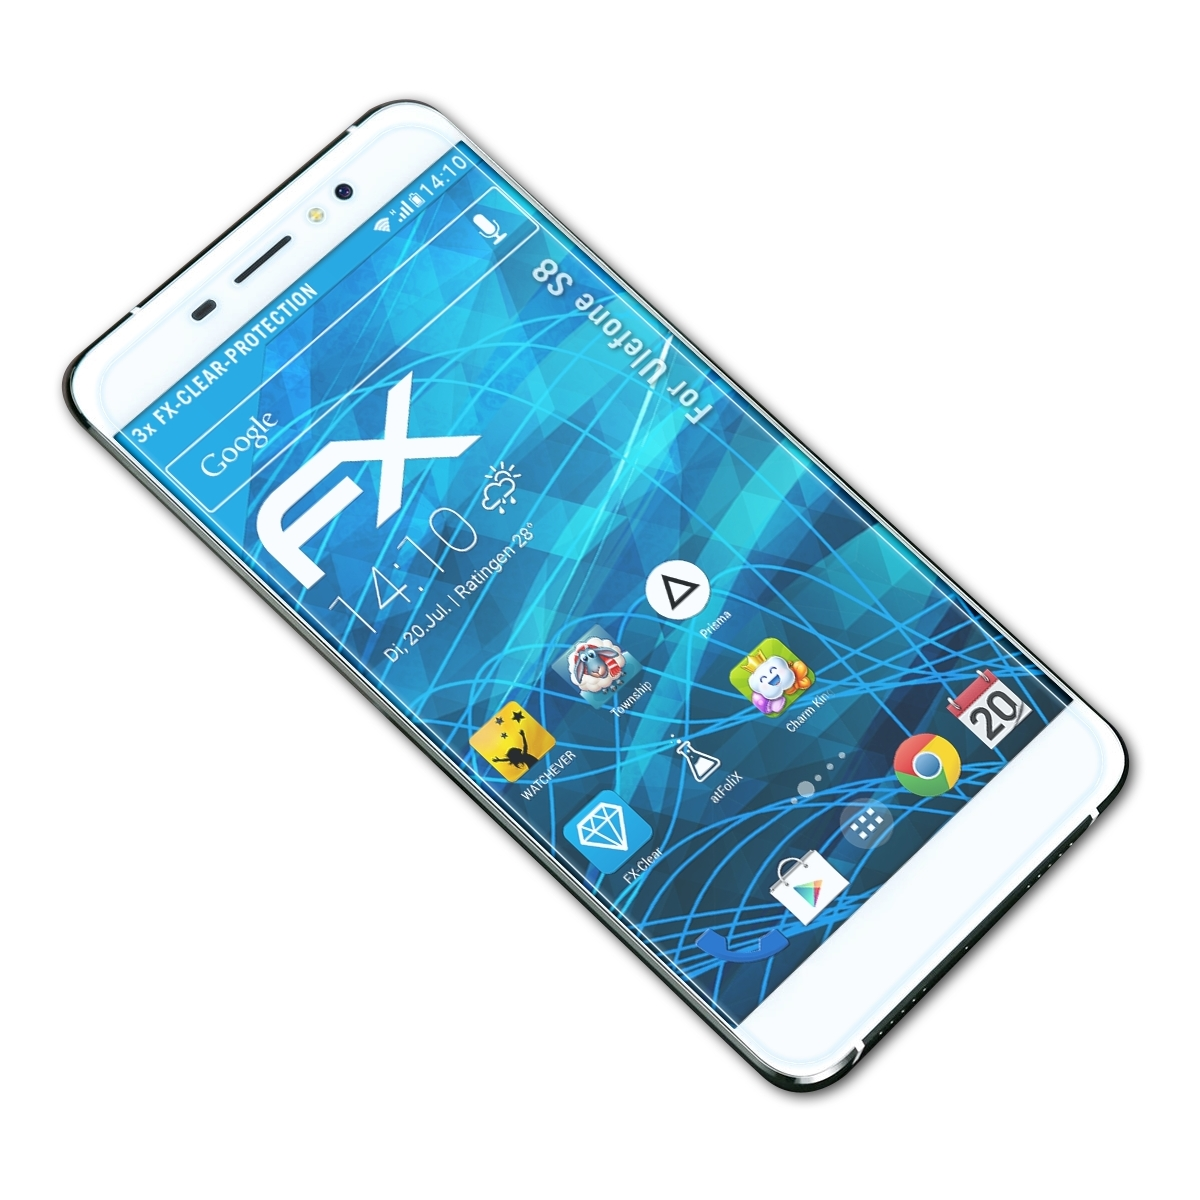 ATFOLIX 3x FX-Clear Ulefone Displayschutz(für S8)